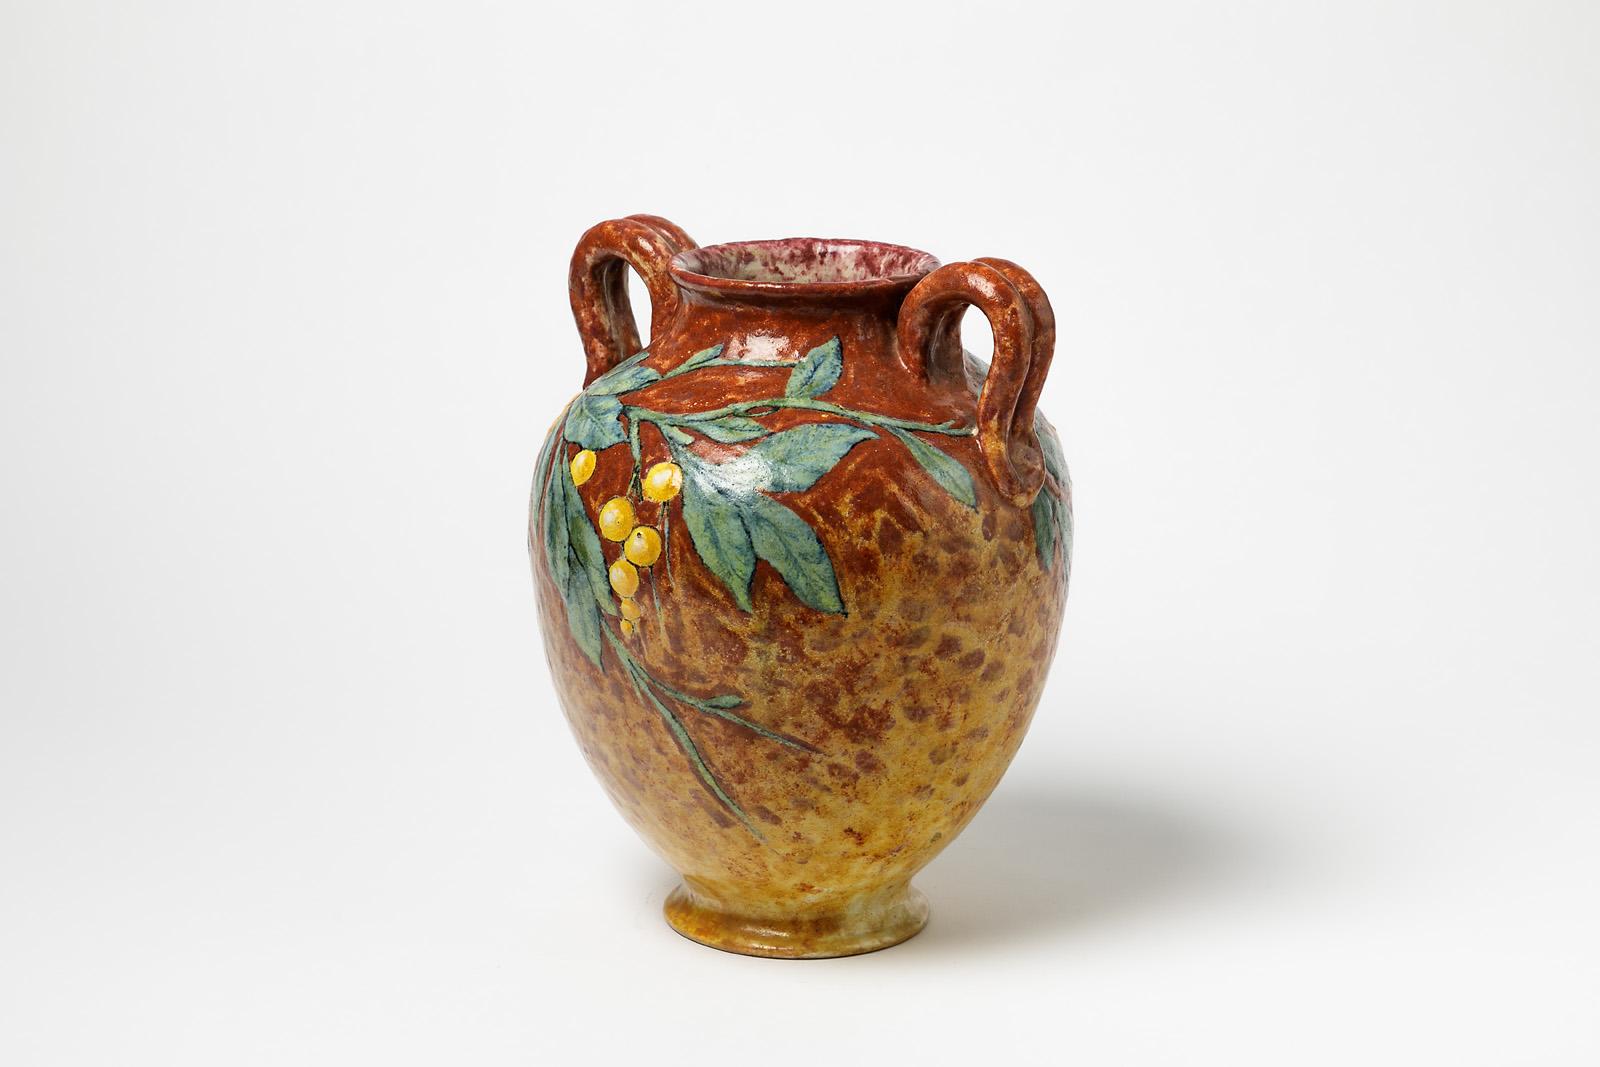 HENRY Chaumeil

Signiert und datiert 1912

Elegante dekorative Keramikvase eines französischen Künstlers.

Orange, gelbe und grüne Keramik Glasuren Farben.

Dekoration mit Früchten und Olivenzweig.

Maße: Höhe 28cm, groß 23cm, Tiefe 20cm.